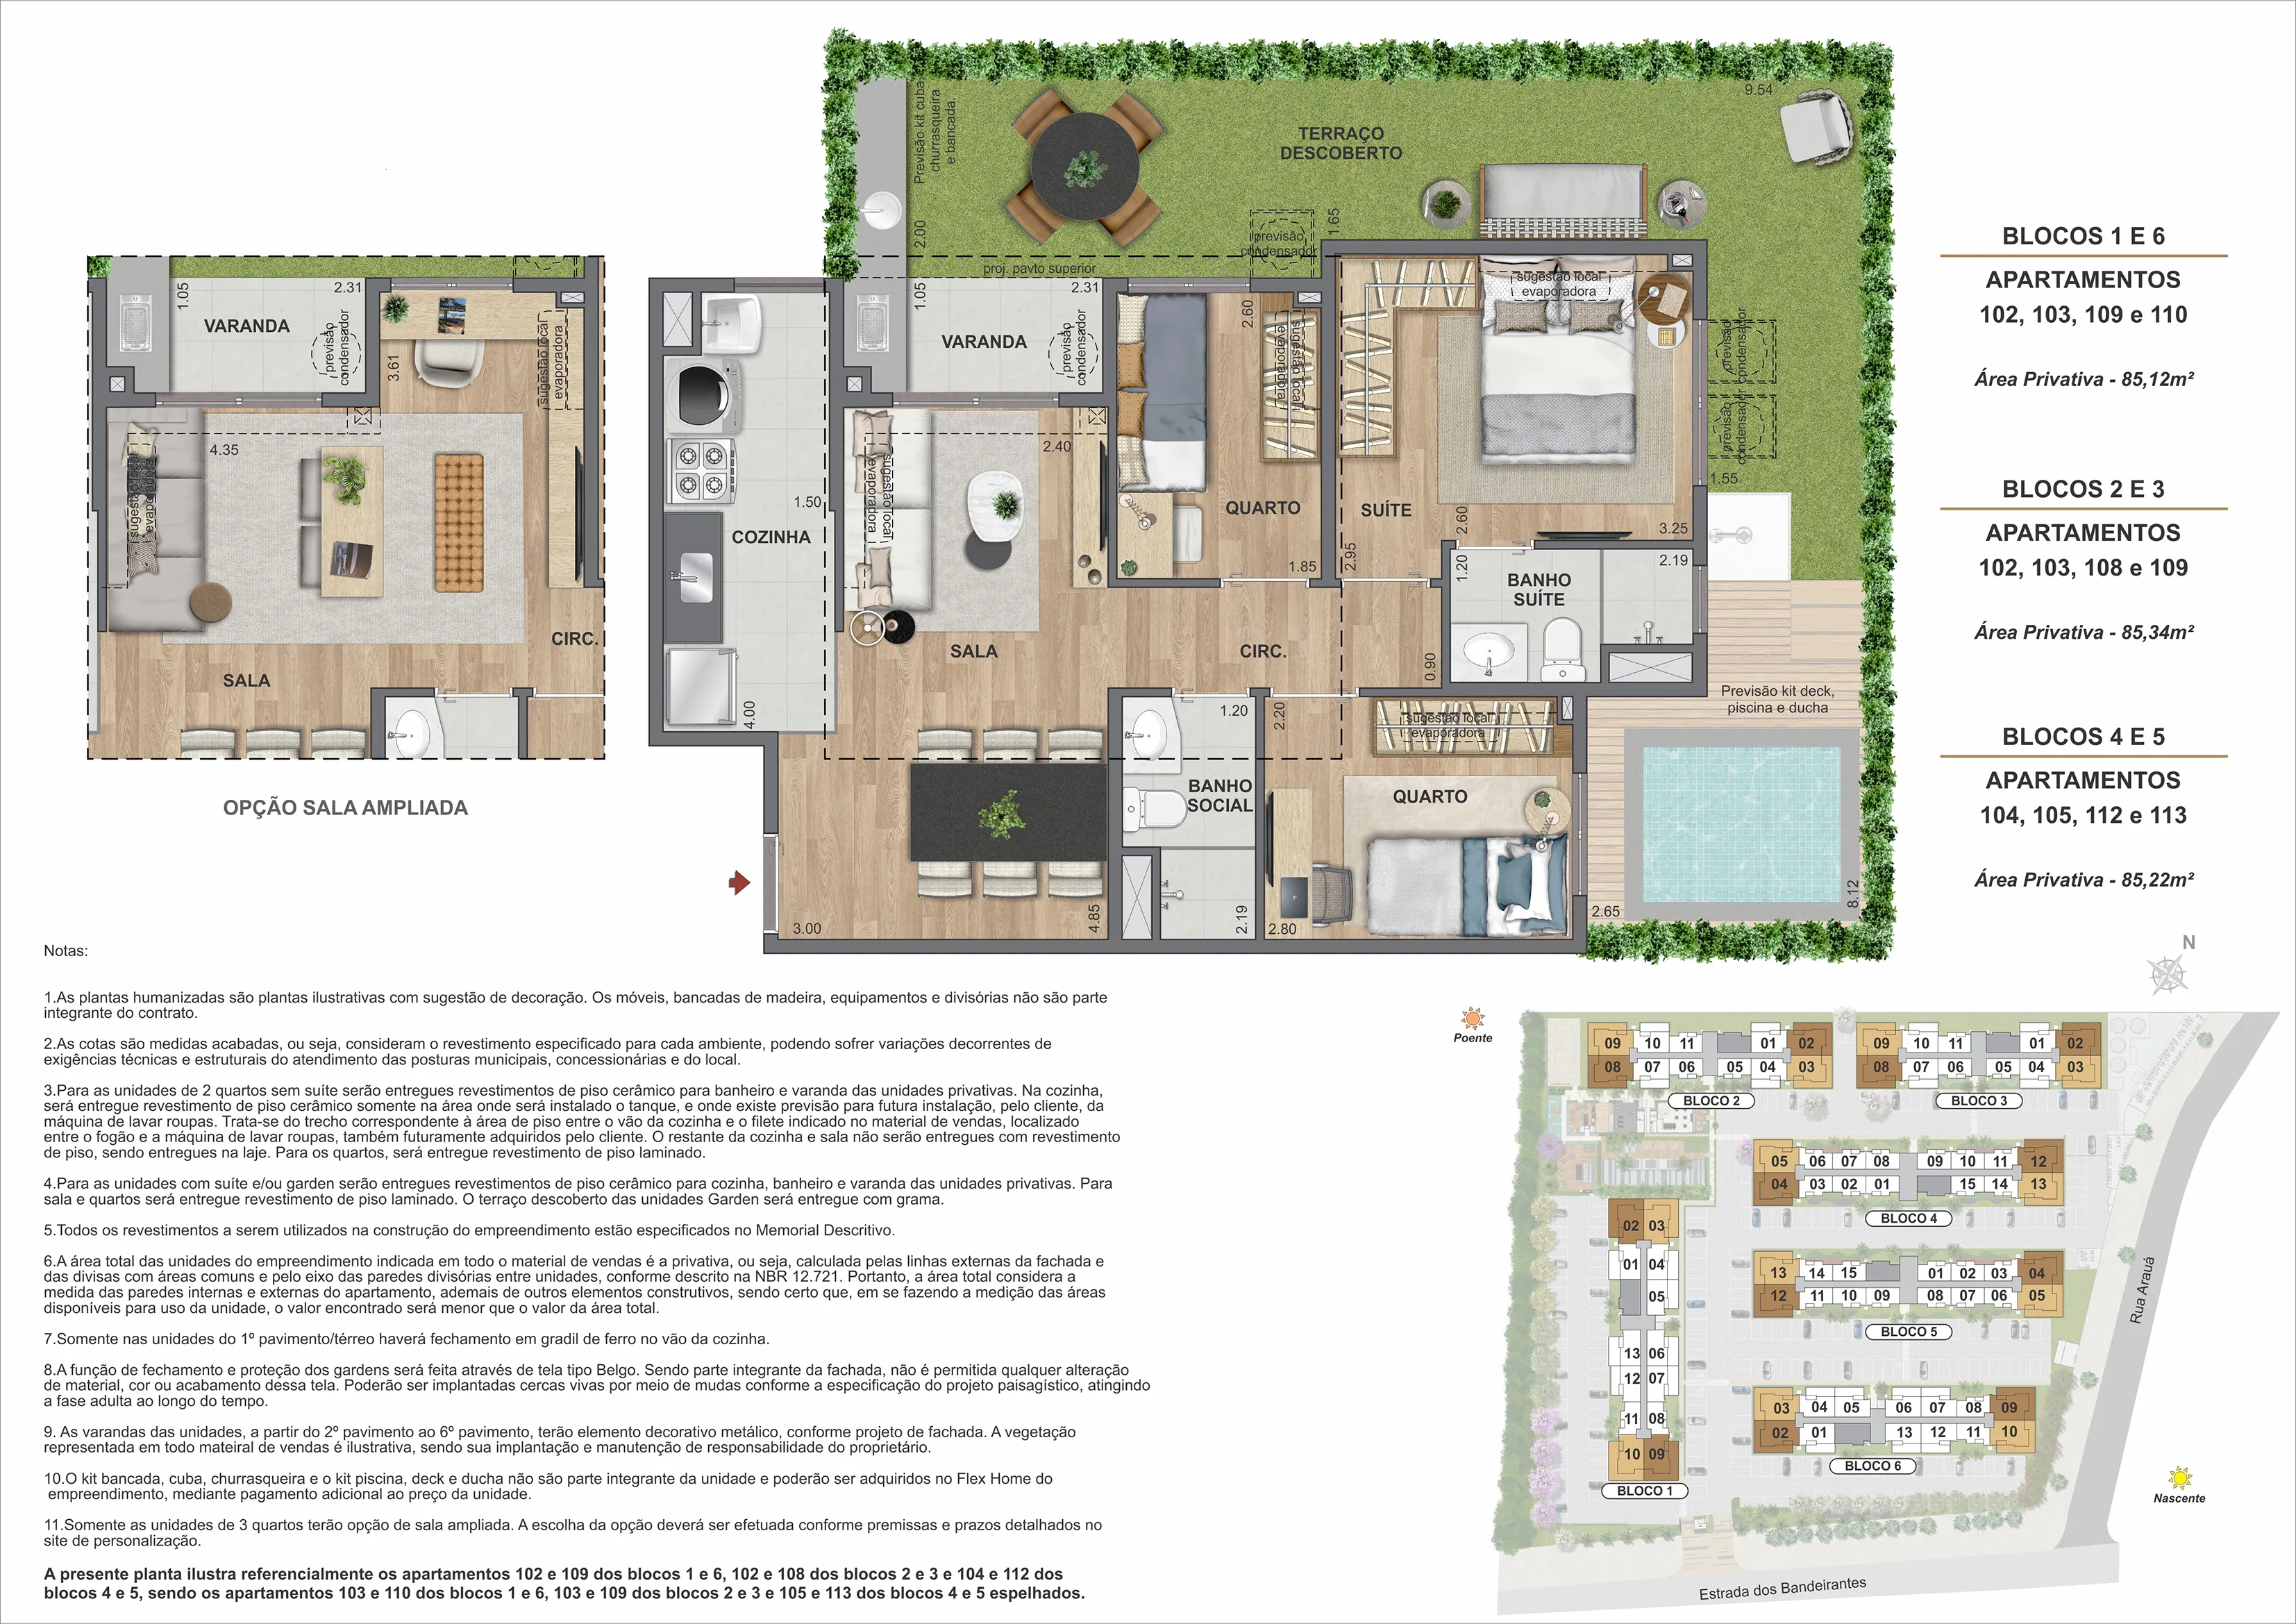 3 quartos garden com suíte - Opção sala ampliada - Área Privativa: 85 m²